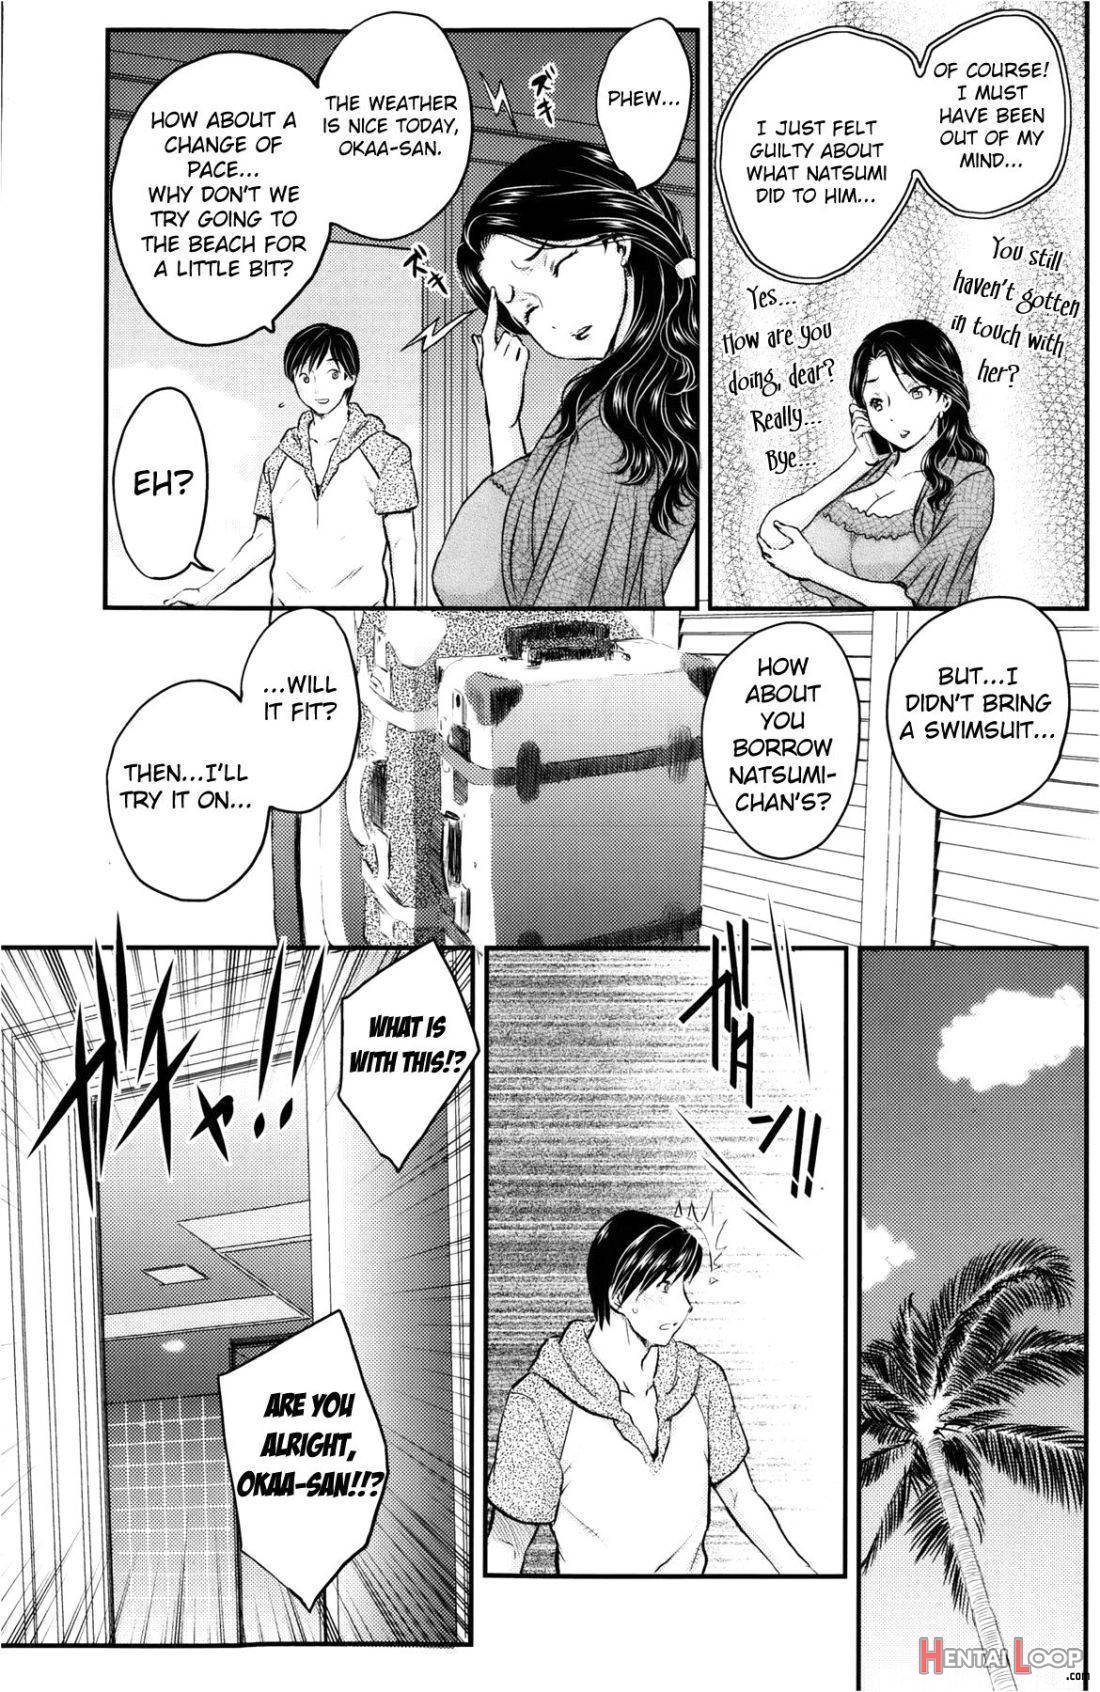 Mitsu no Tsuki page 21